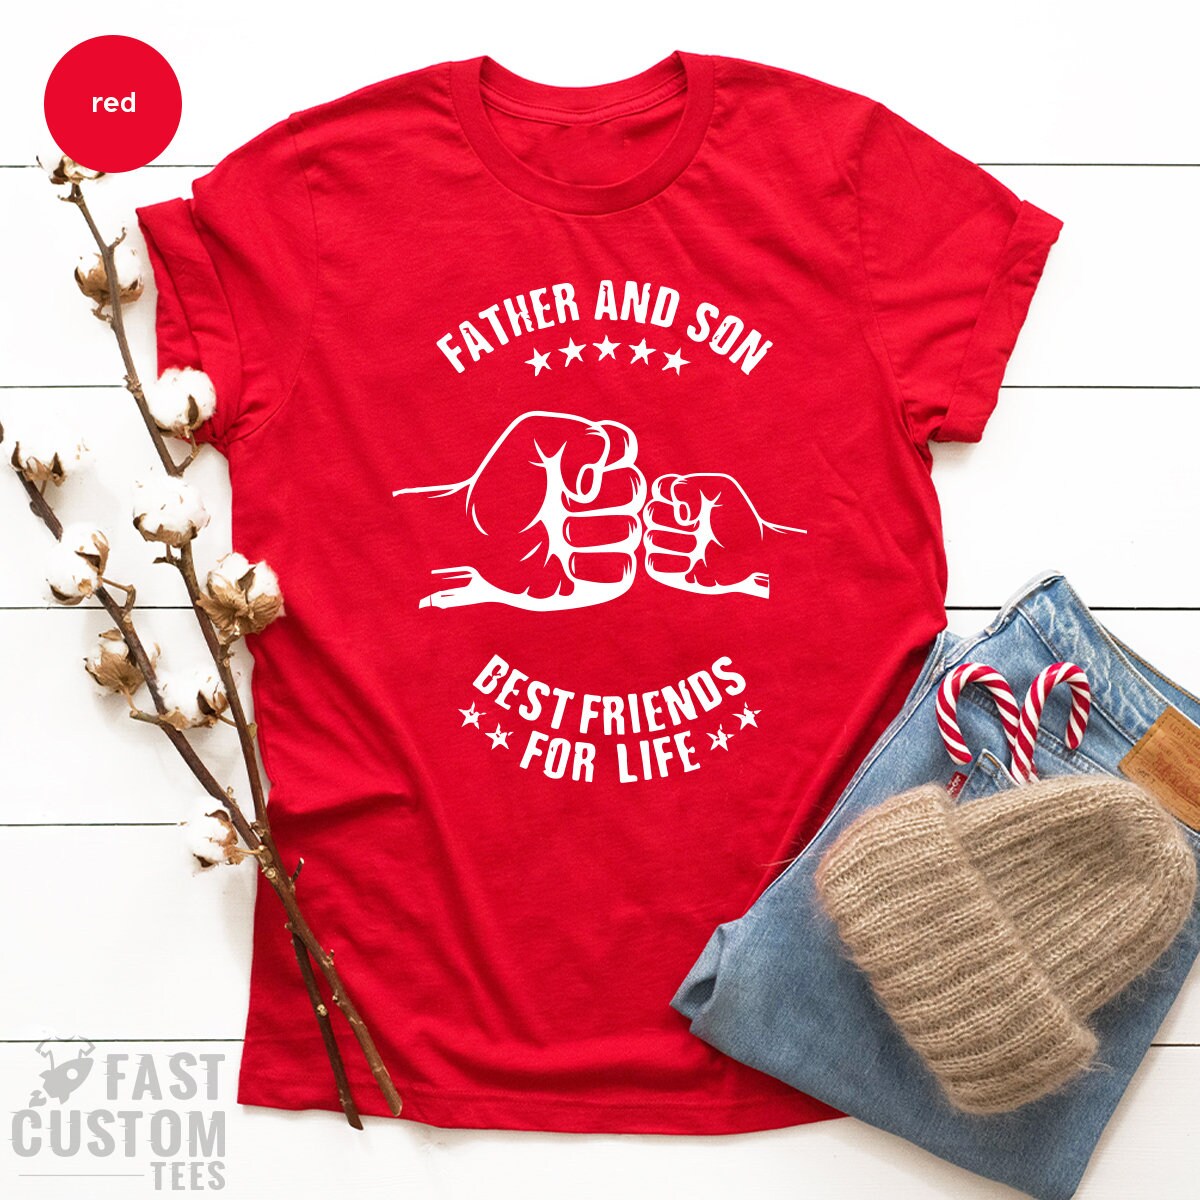 Personalized Papa Shirt, Papa Shirt for Men, My Favorite Fishing